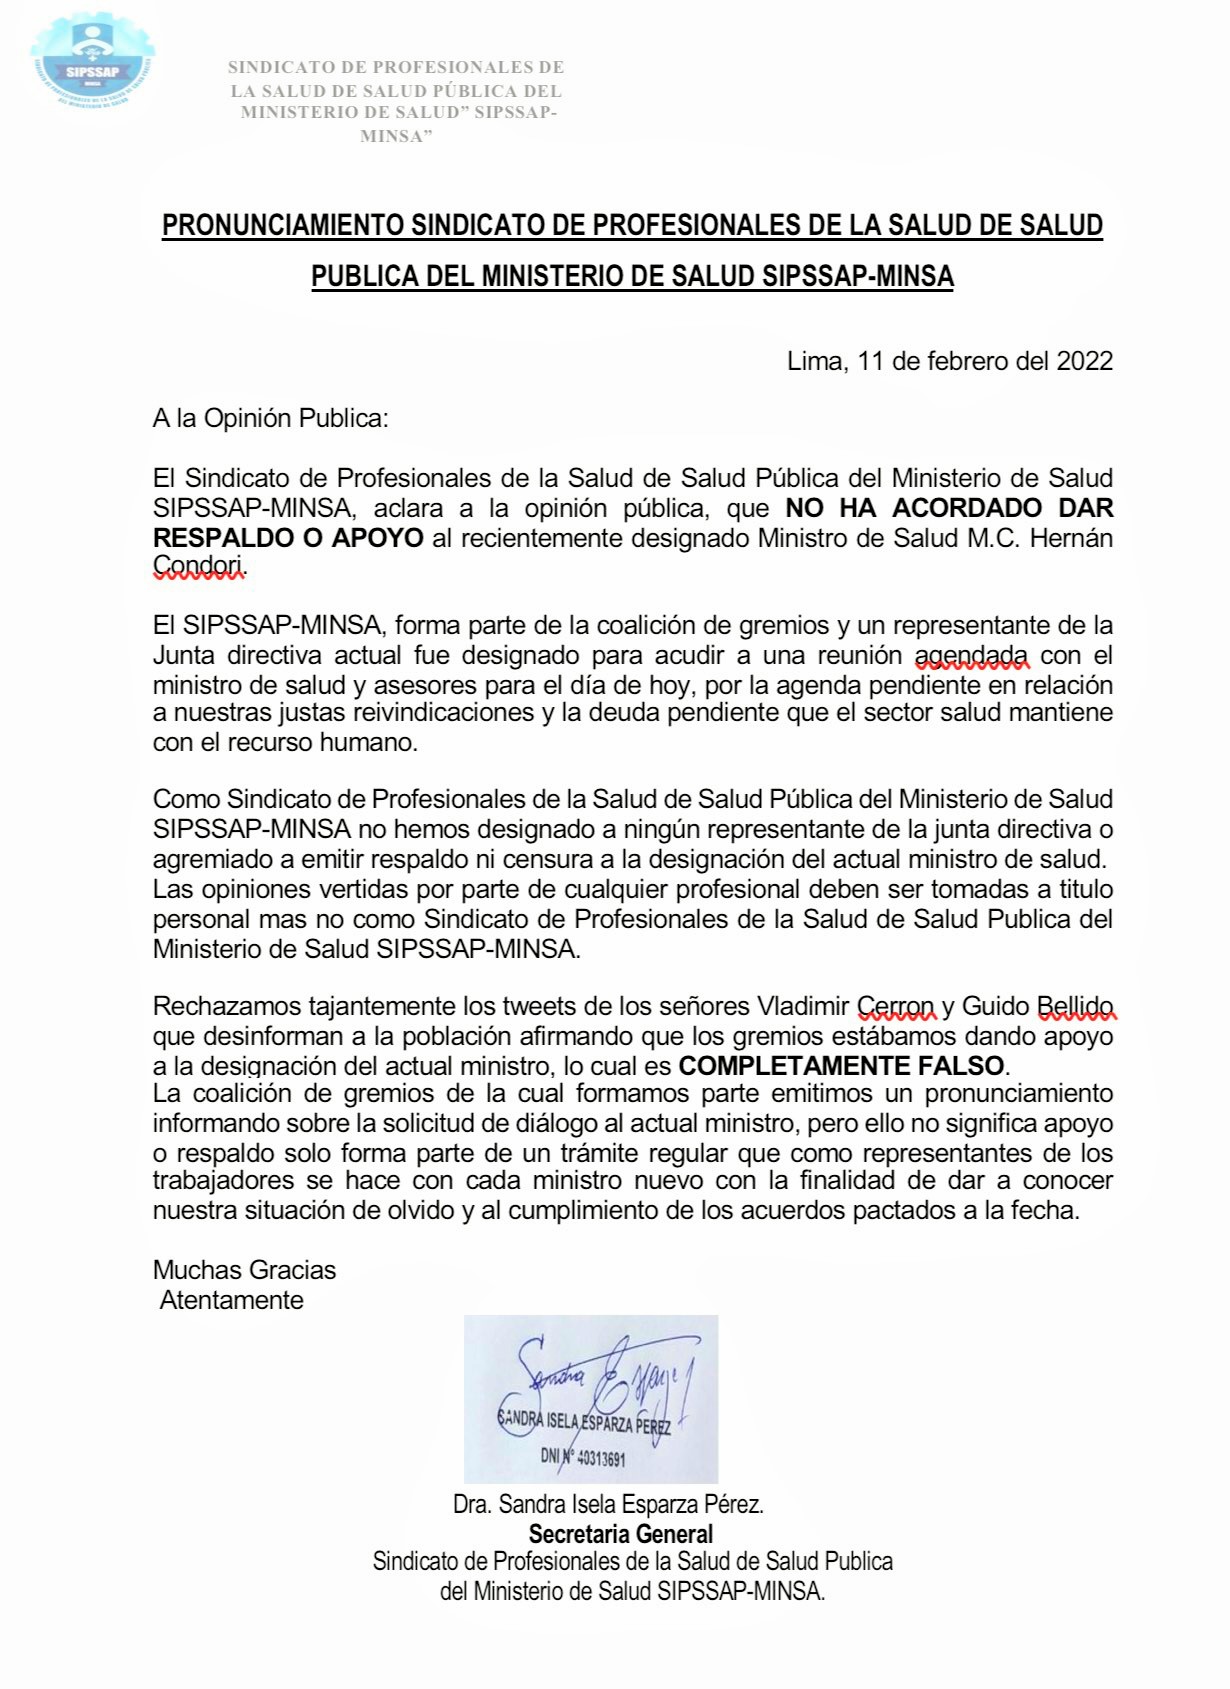 Sindicatos de sector salud desmienten a Vladimir Cerrón y Guido Bellido sobre apoyo sindical a ministro Condori